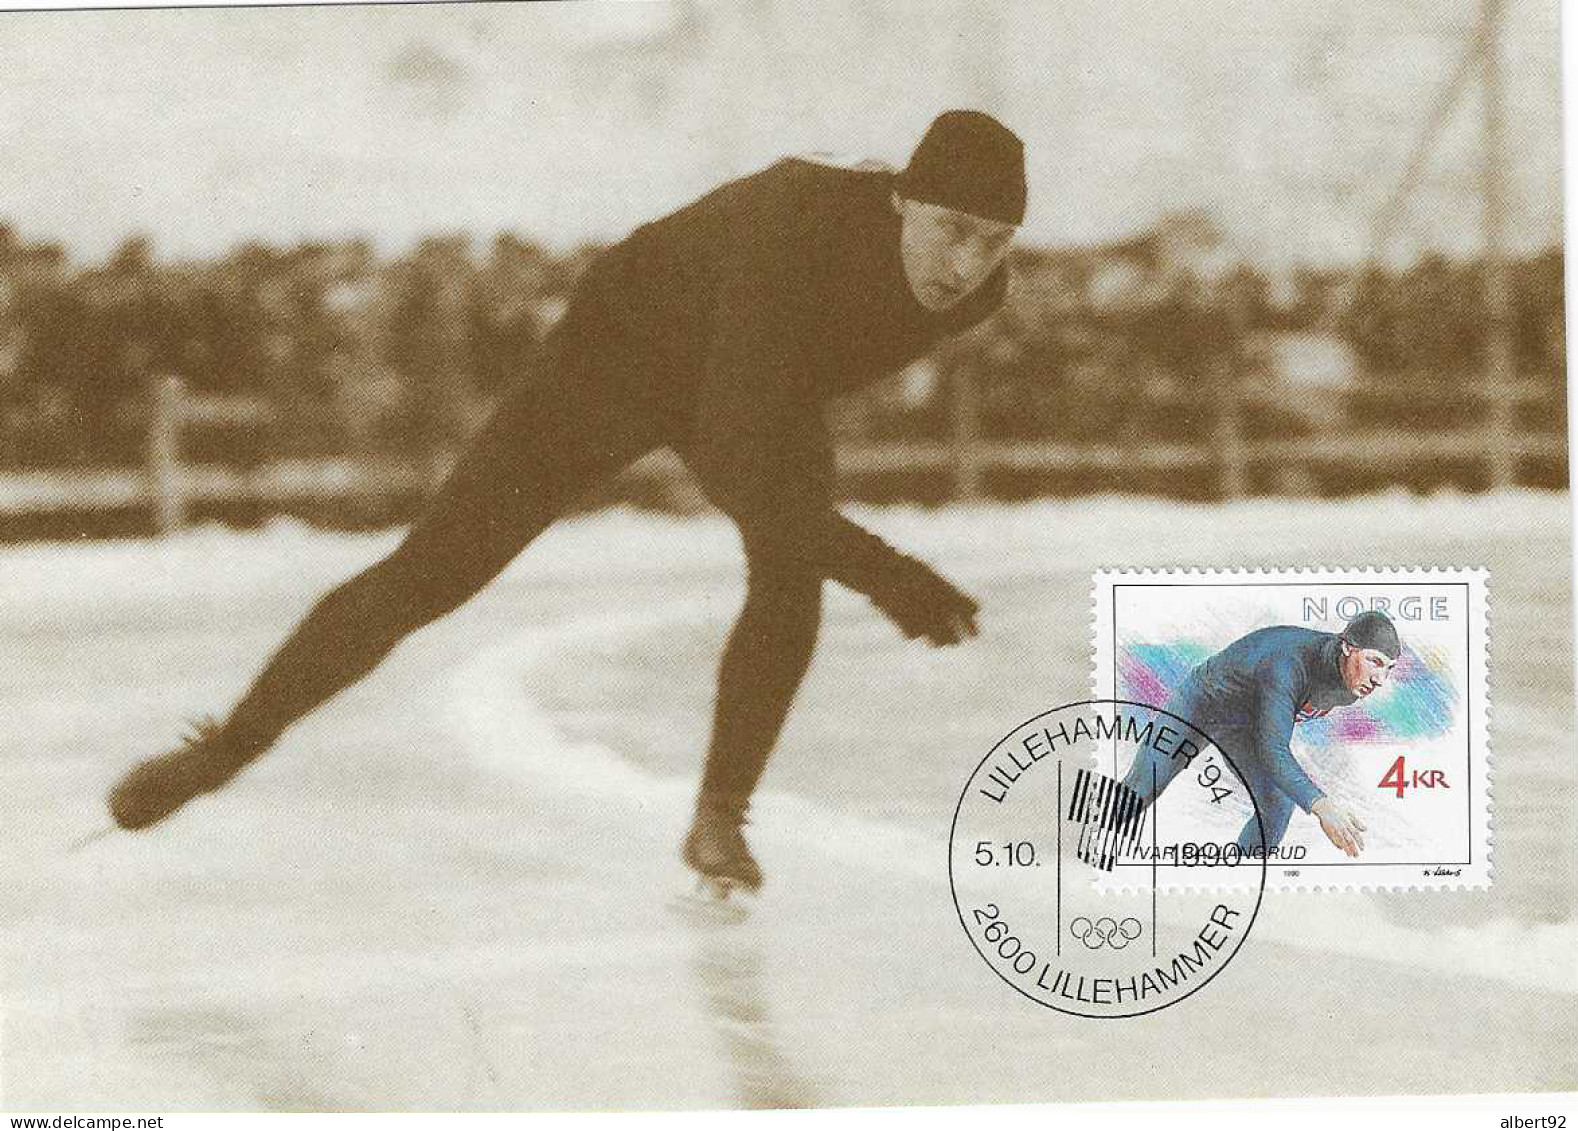 1990 Hommage à Ivar Ballangrud Patinage De Vitesse: Médaillé Or Aux Jeux Olympiques De Saint Moritz 1928 (5000m) - Inverno1928: St-Morits